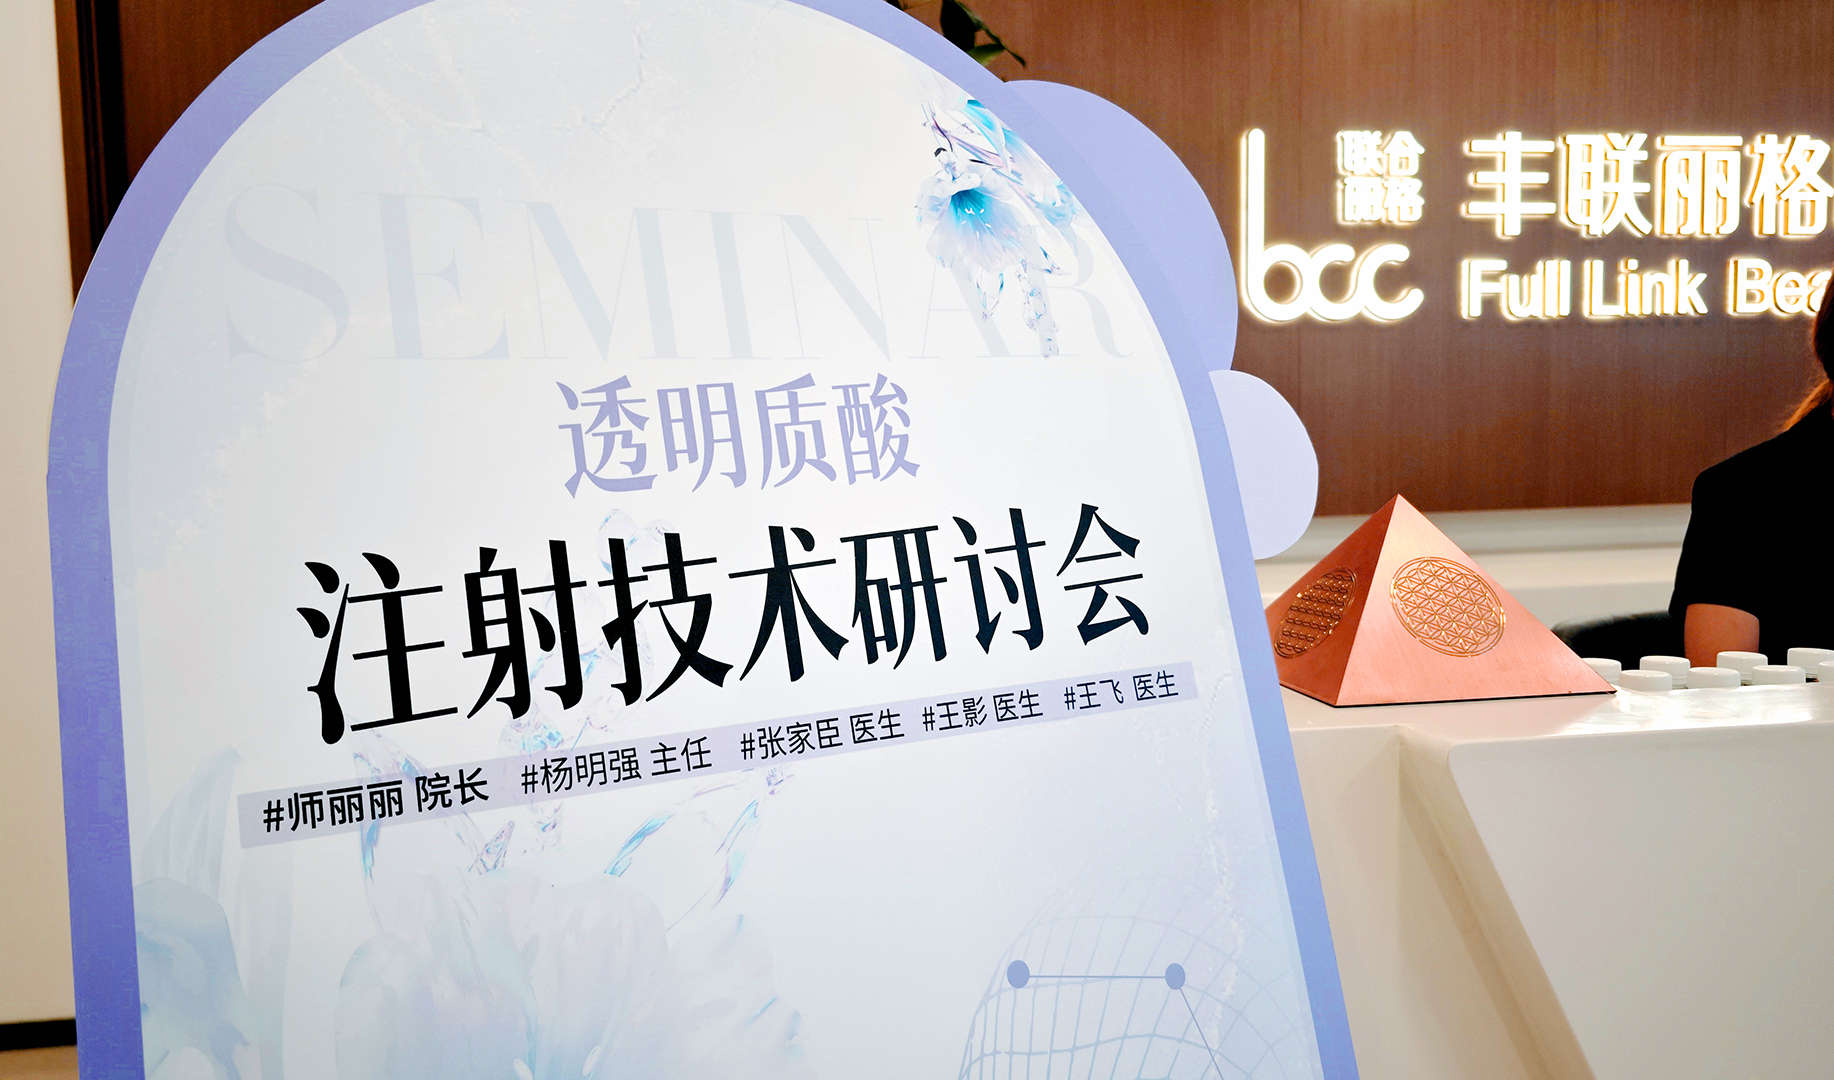 北京丰联丽格透明质酸注射技术研讨会成功举办